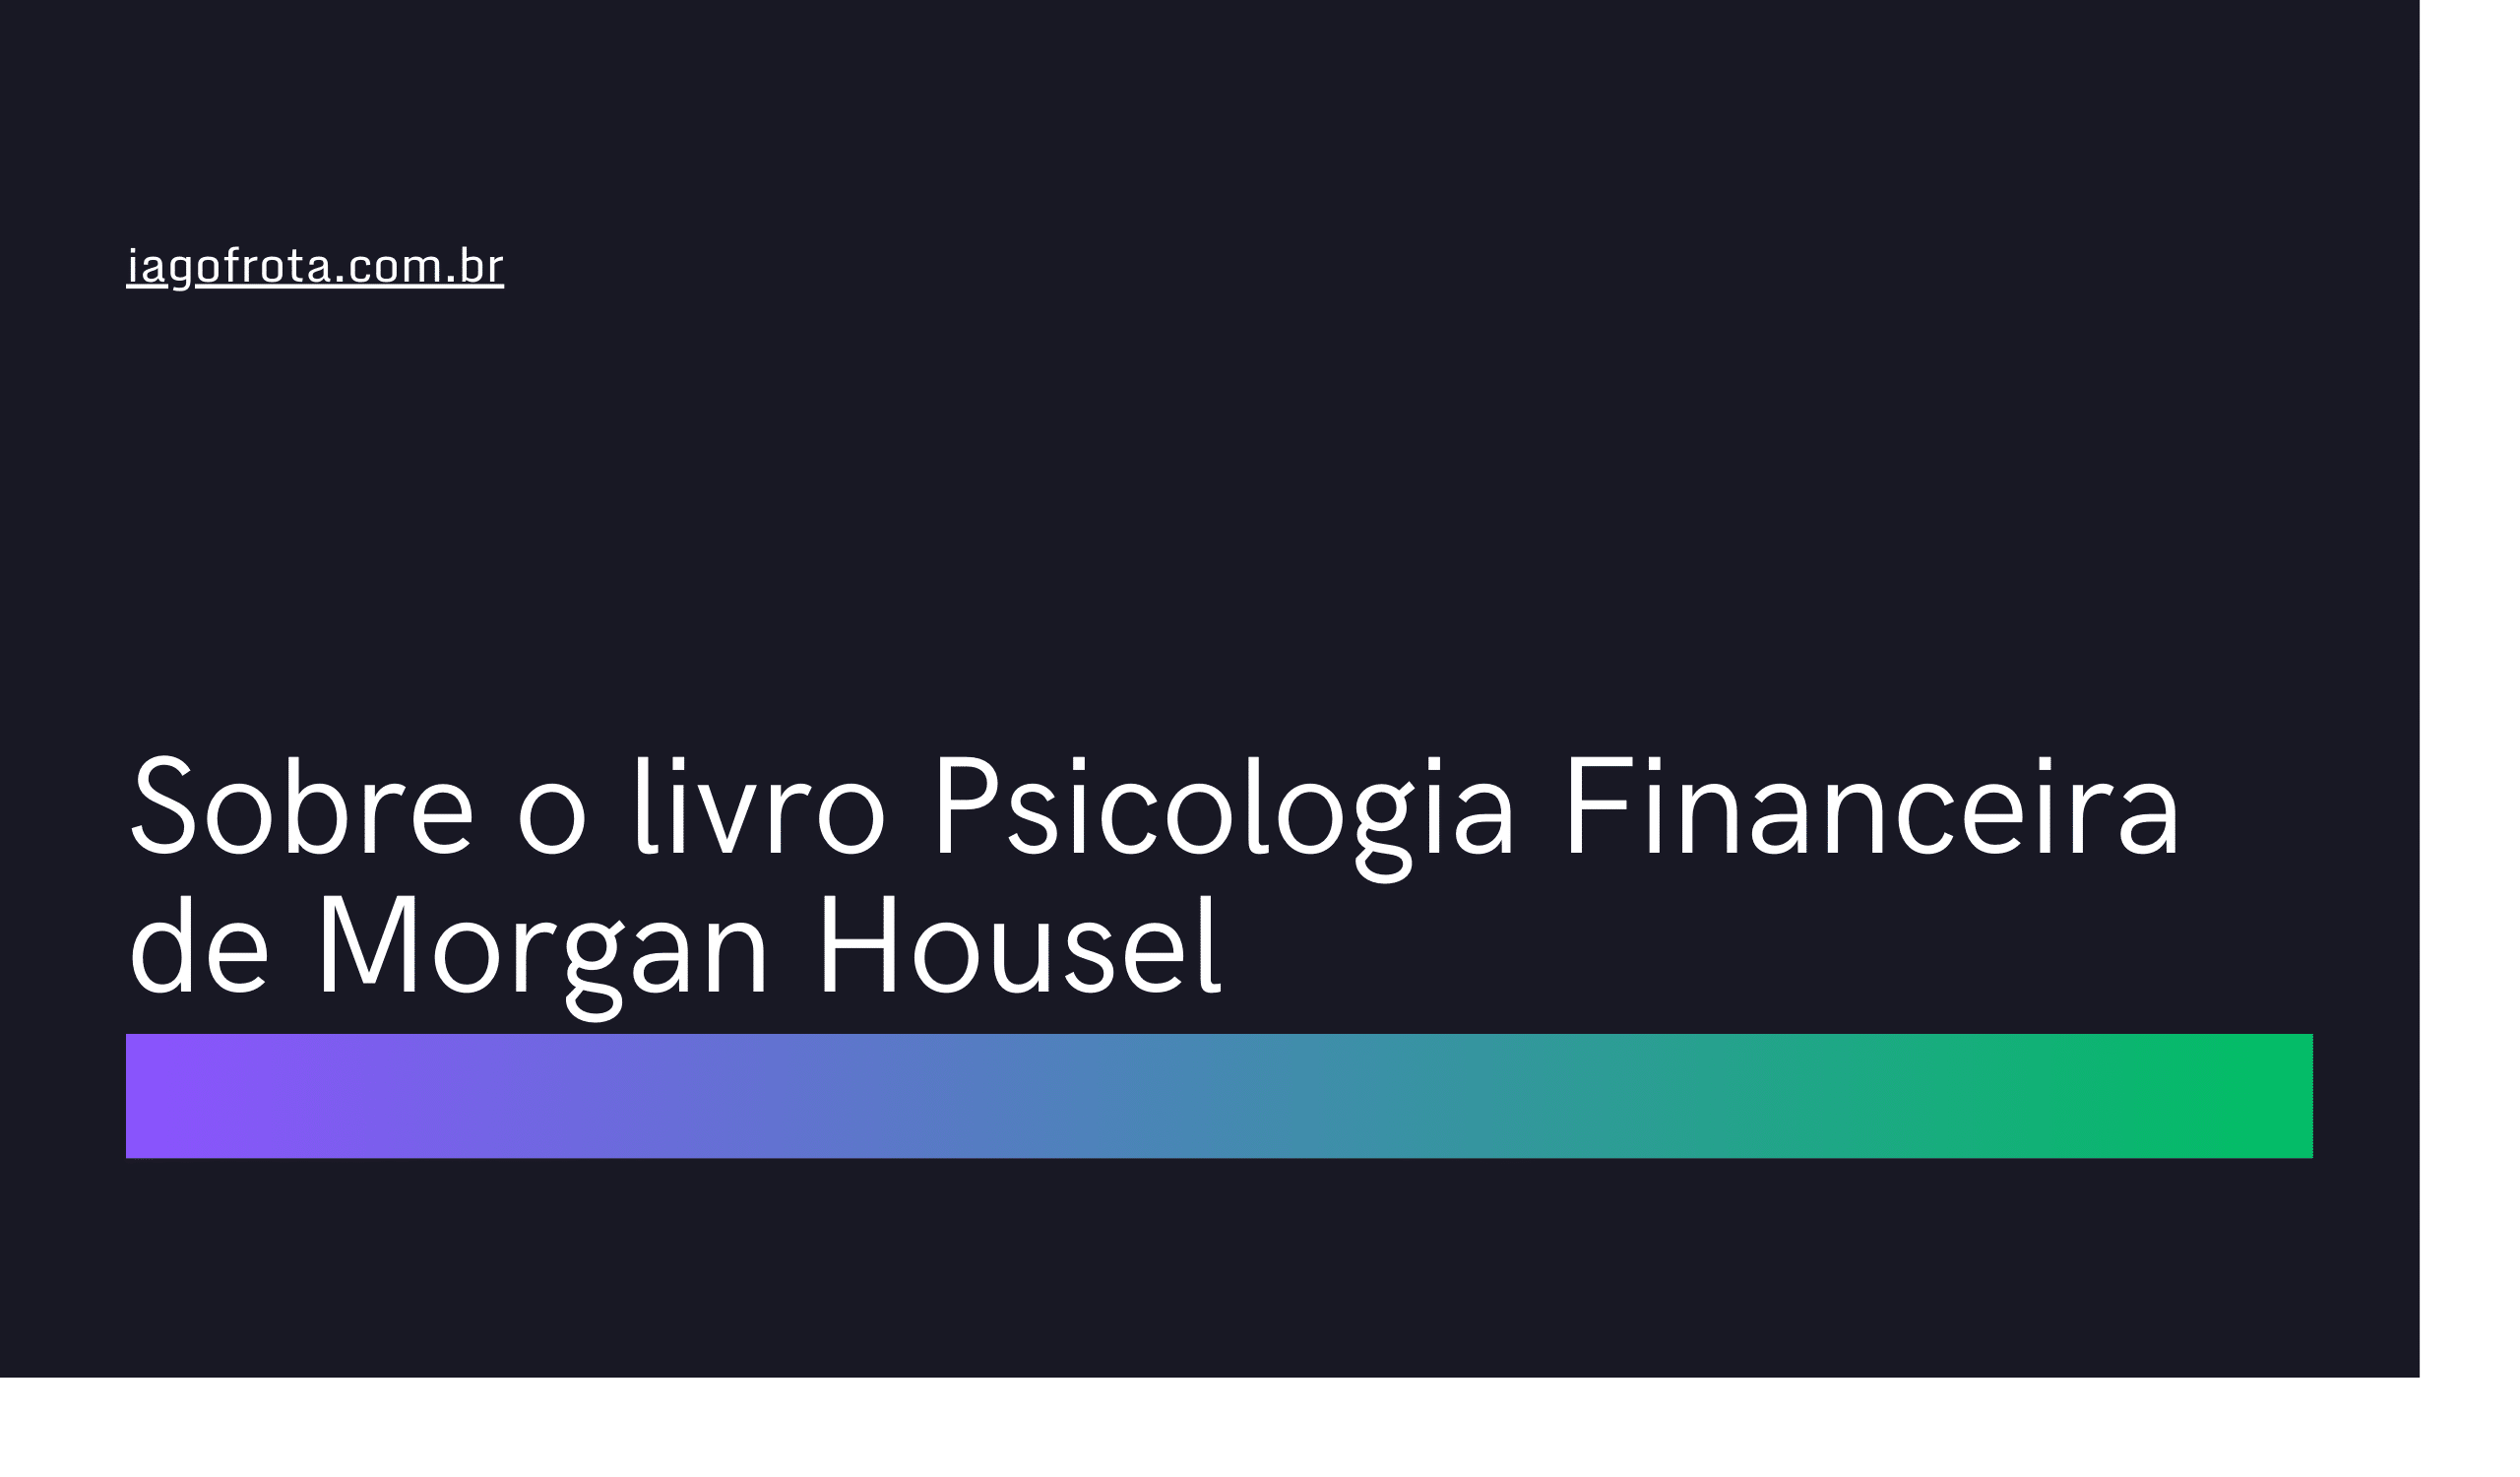 Sobre o livro A Psicologia Financeira de Morgan Housel